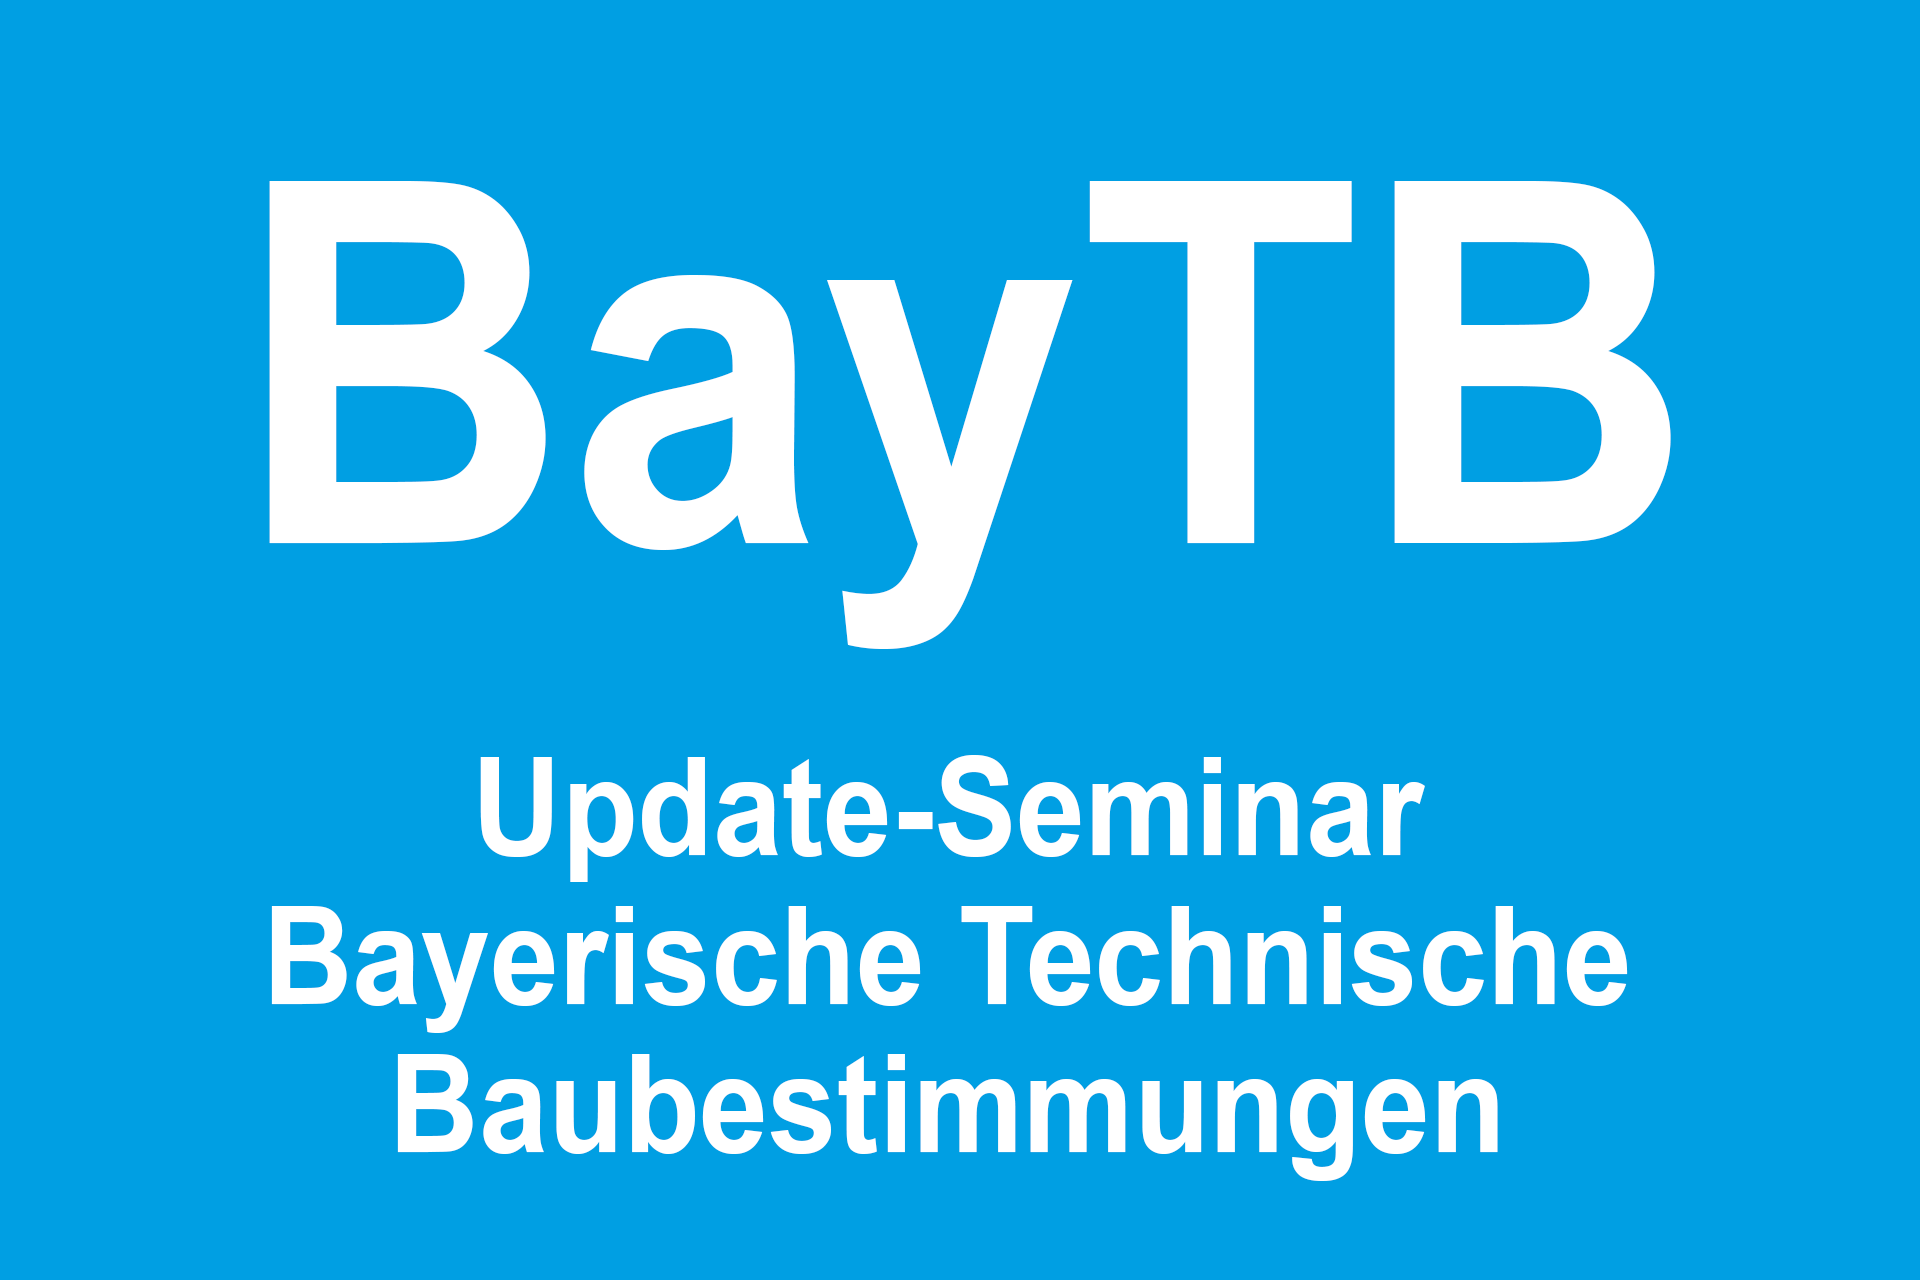 Update-Seminar zur Bayerischen Technischen Baubestimmungen (BayTB) 2021